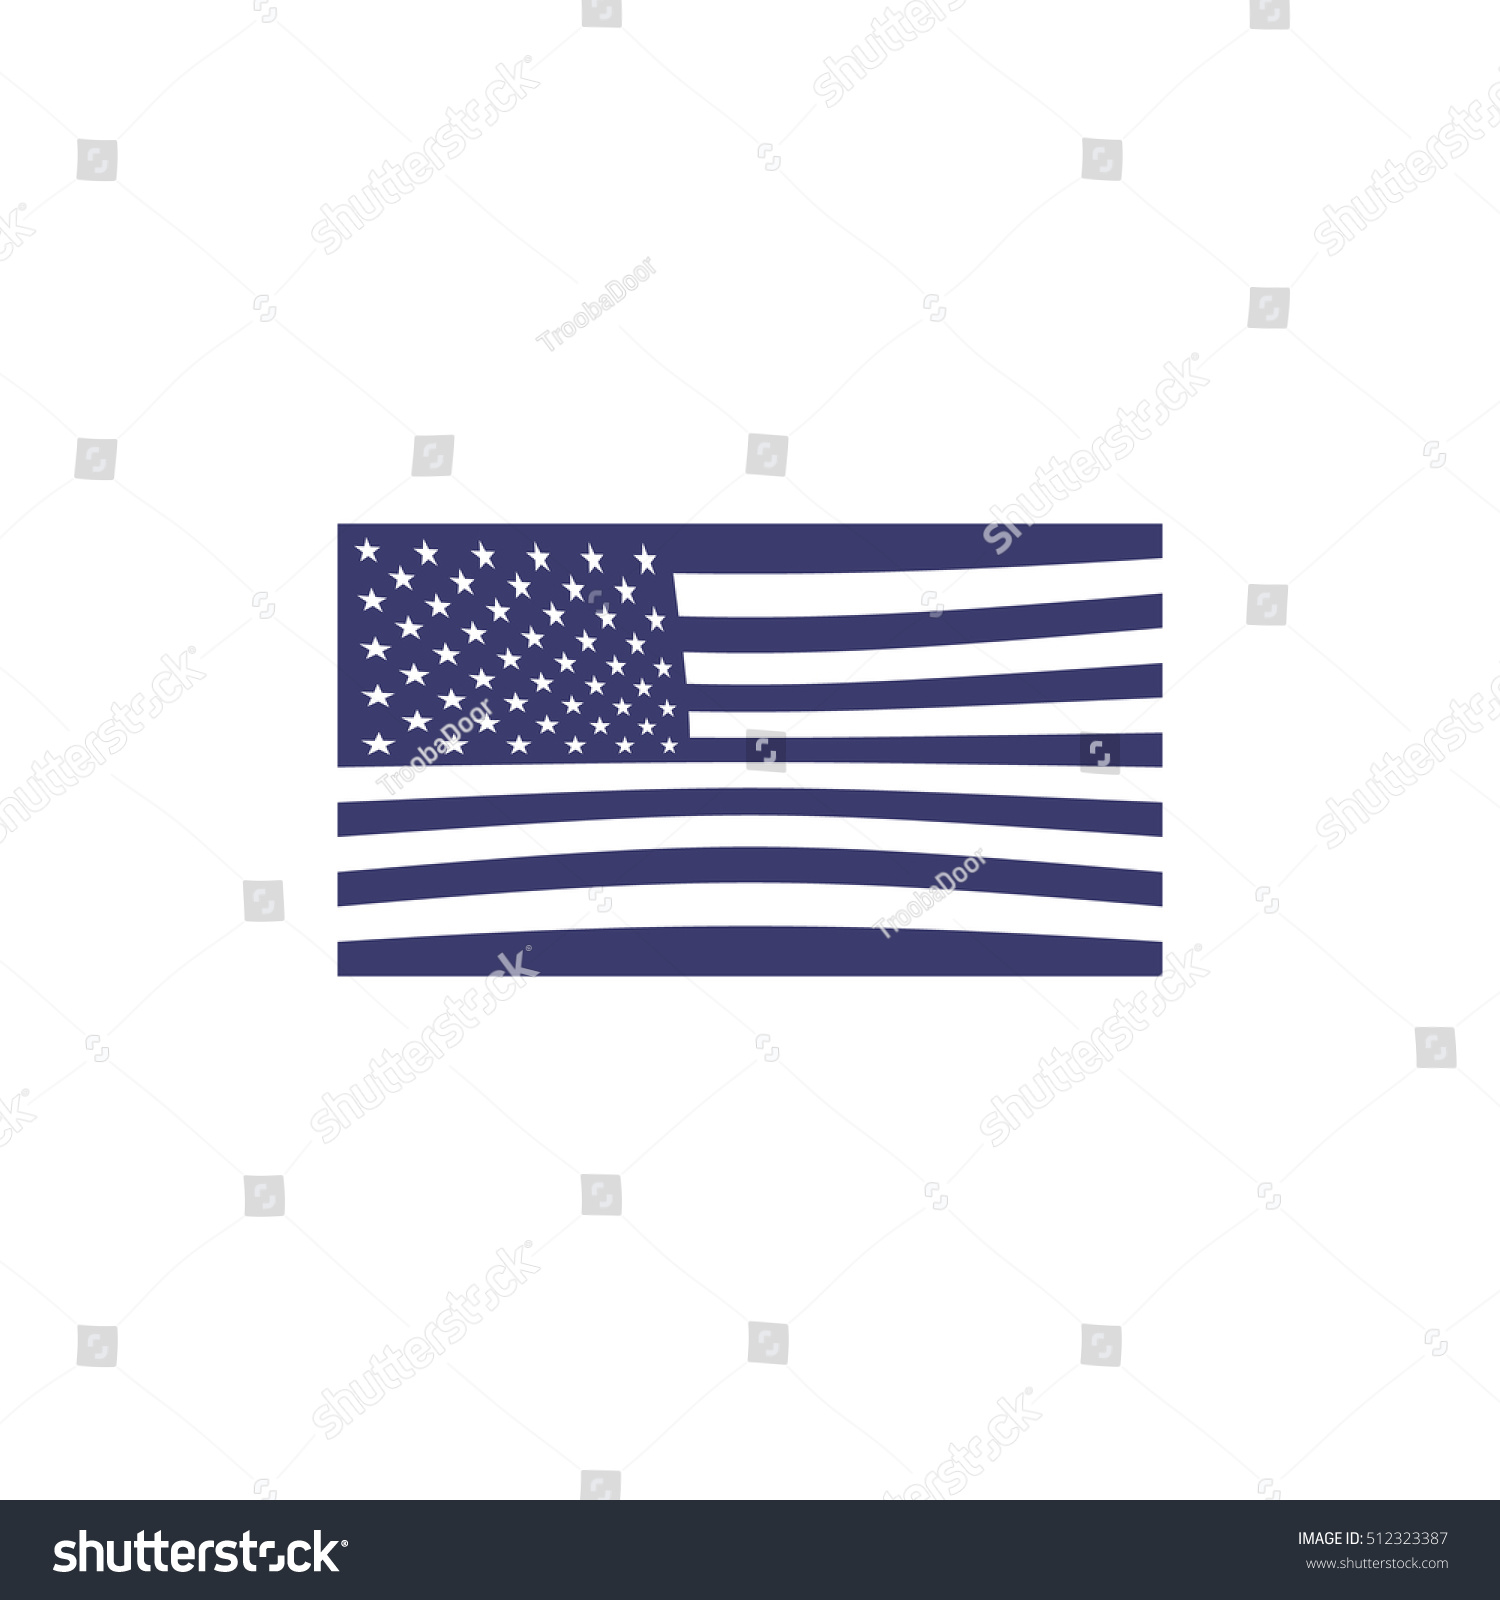 American Flag Stock Illustration 512323387 - Shutterstock